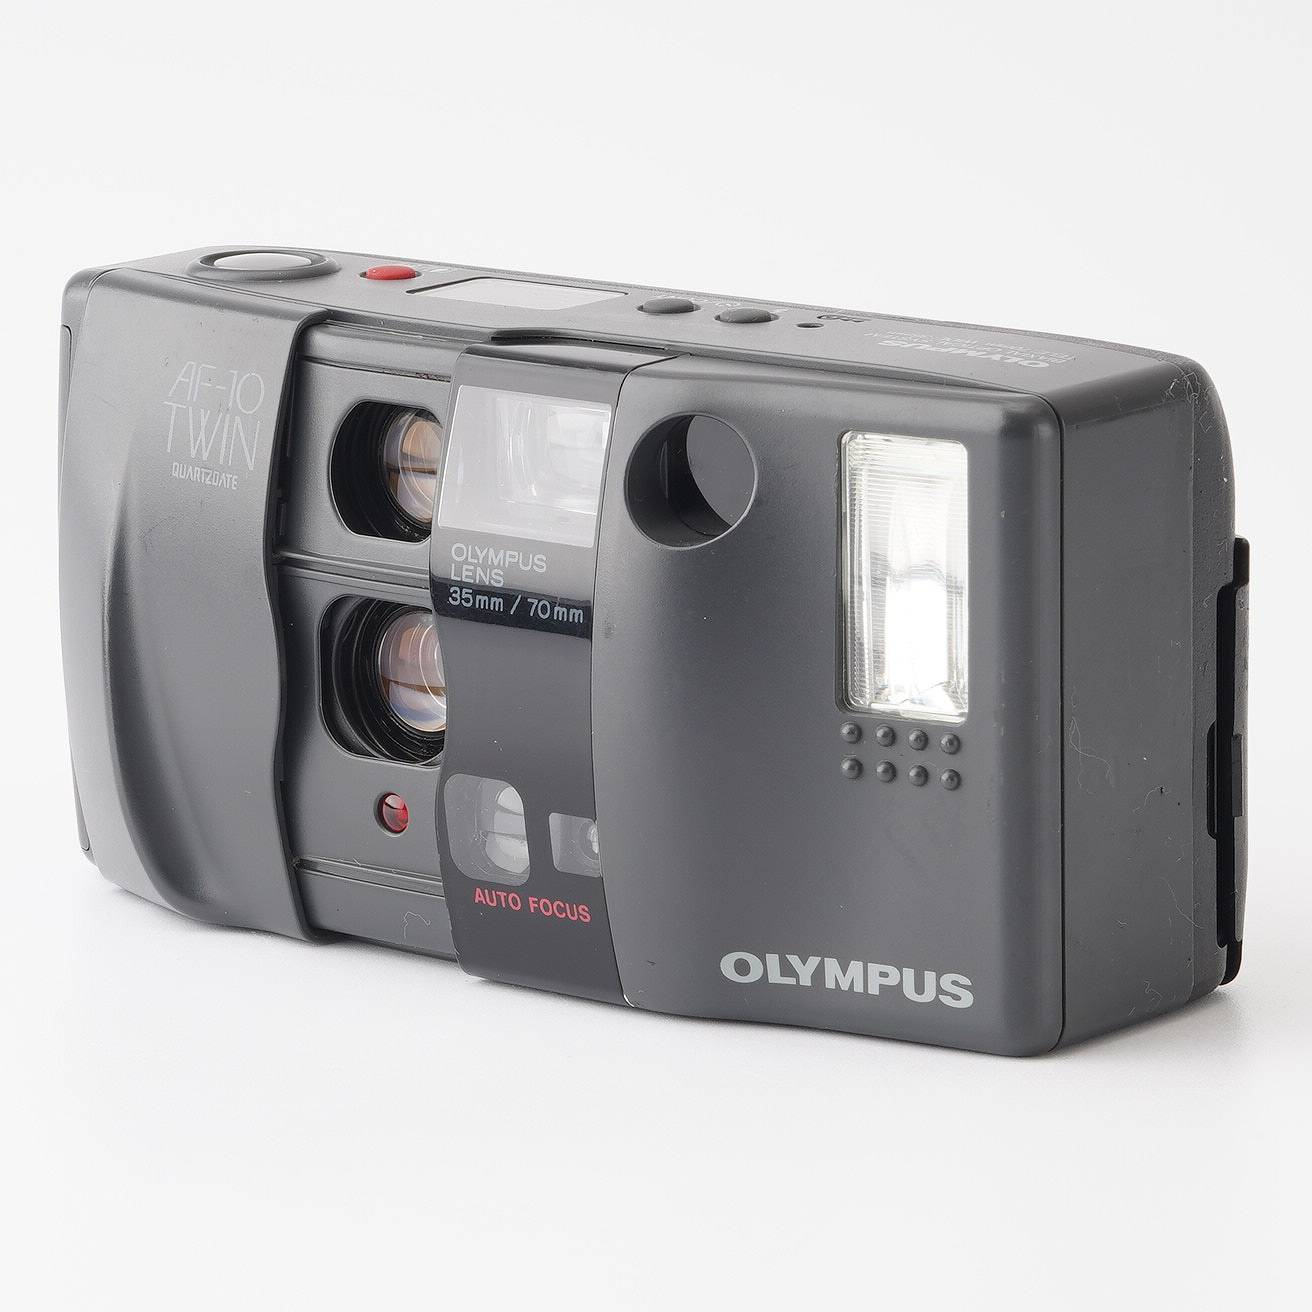 オリンパス OLYMPUS AF-10 TWIN 電池付き - フィルムカメラ